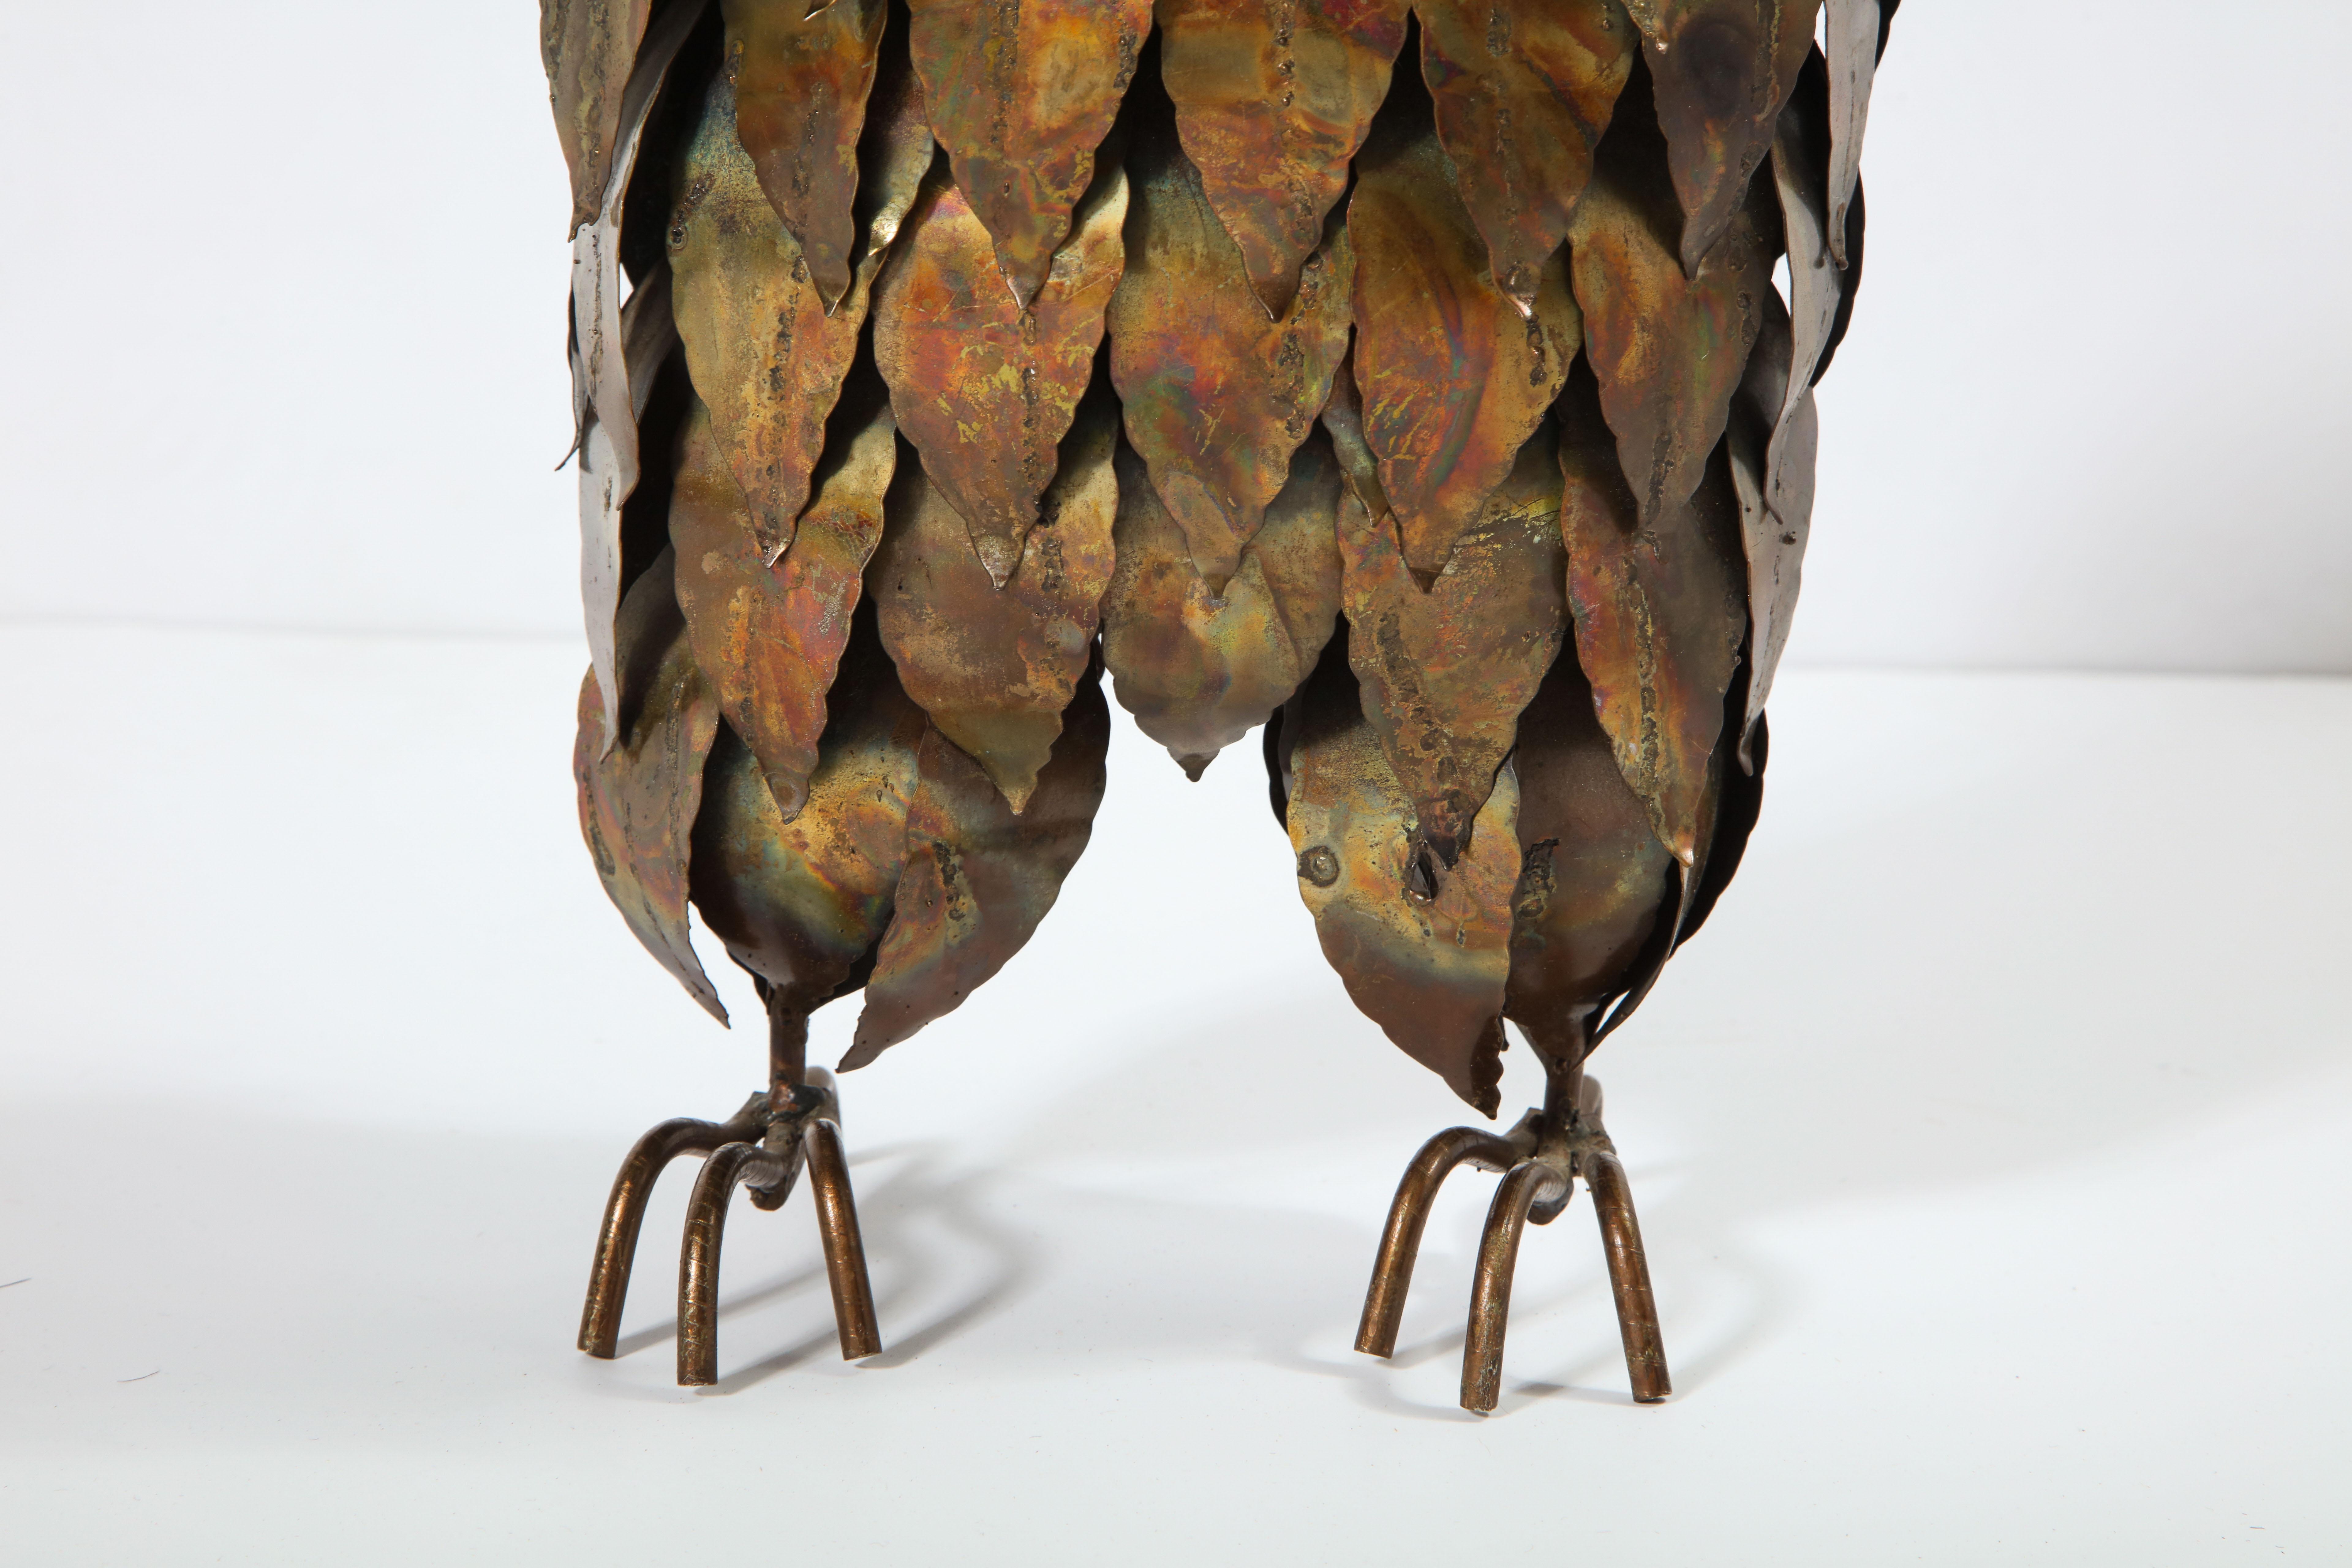 Hand-Crafted Sculpture, Decorative Owl, Brass, Vintage Brass, Midcentury Design, circa 1950